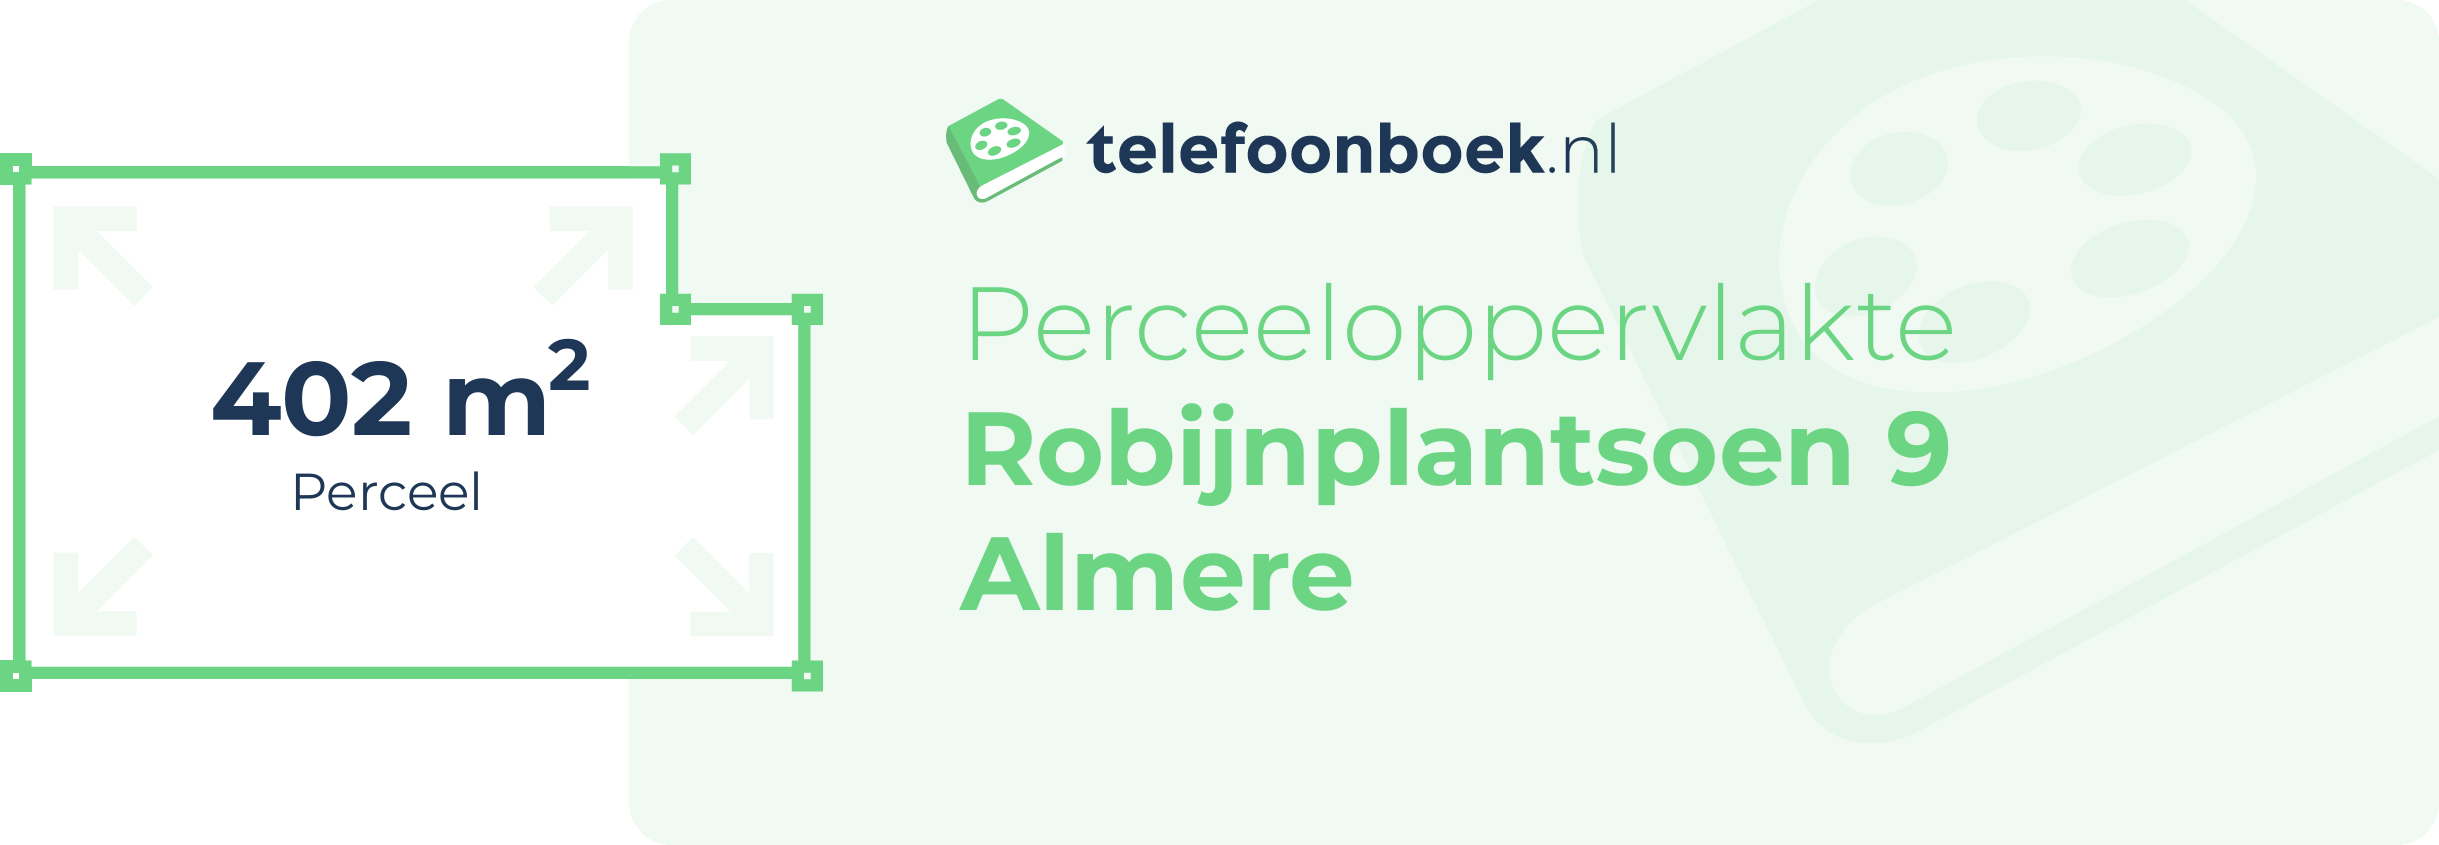 Perceeloppervlakte Robijnplantsoen 9 Almere